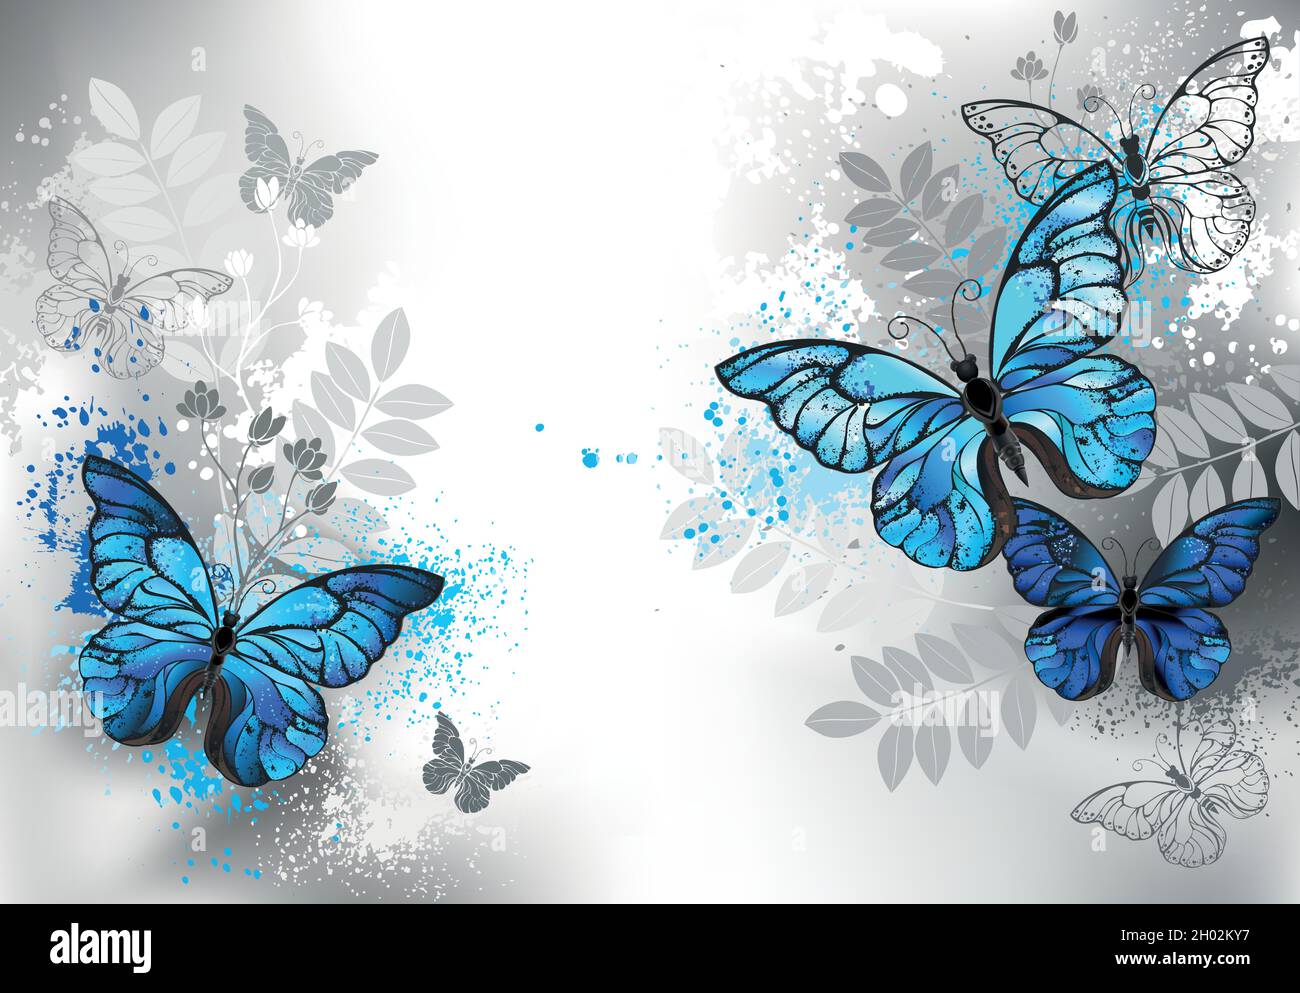 Komposition aus detaillierten blauen Morpho-Schmetterlingen, verziert mit blauen Farbtropfen mit Silhouette wilden Pflanzen auf grauem Hintergrund. Stock Vektor